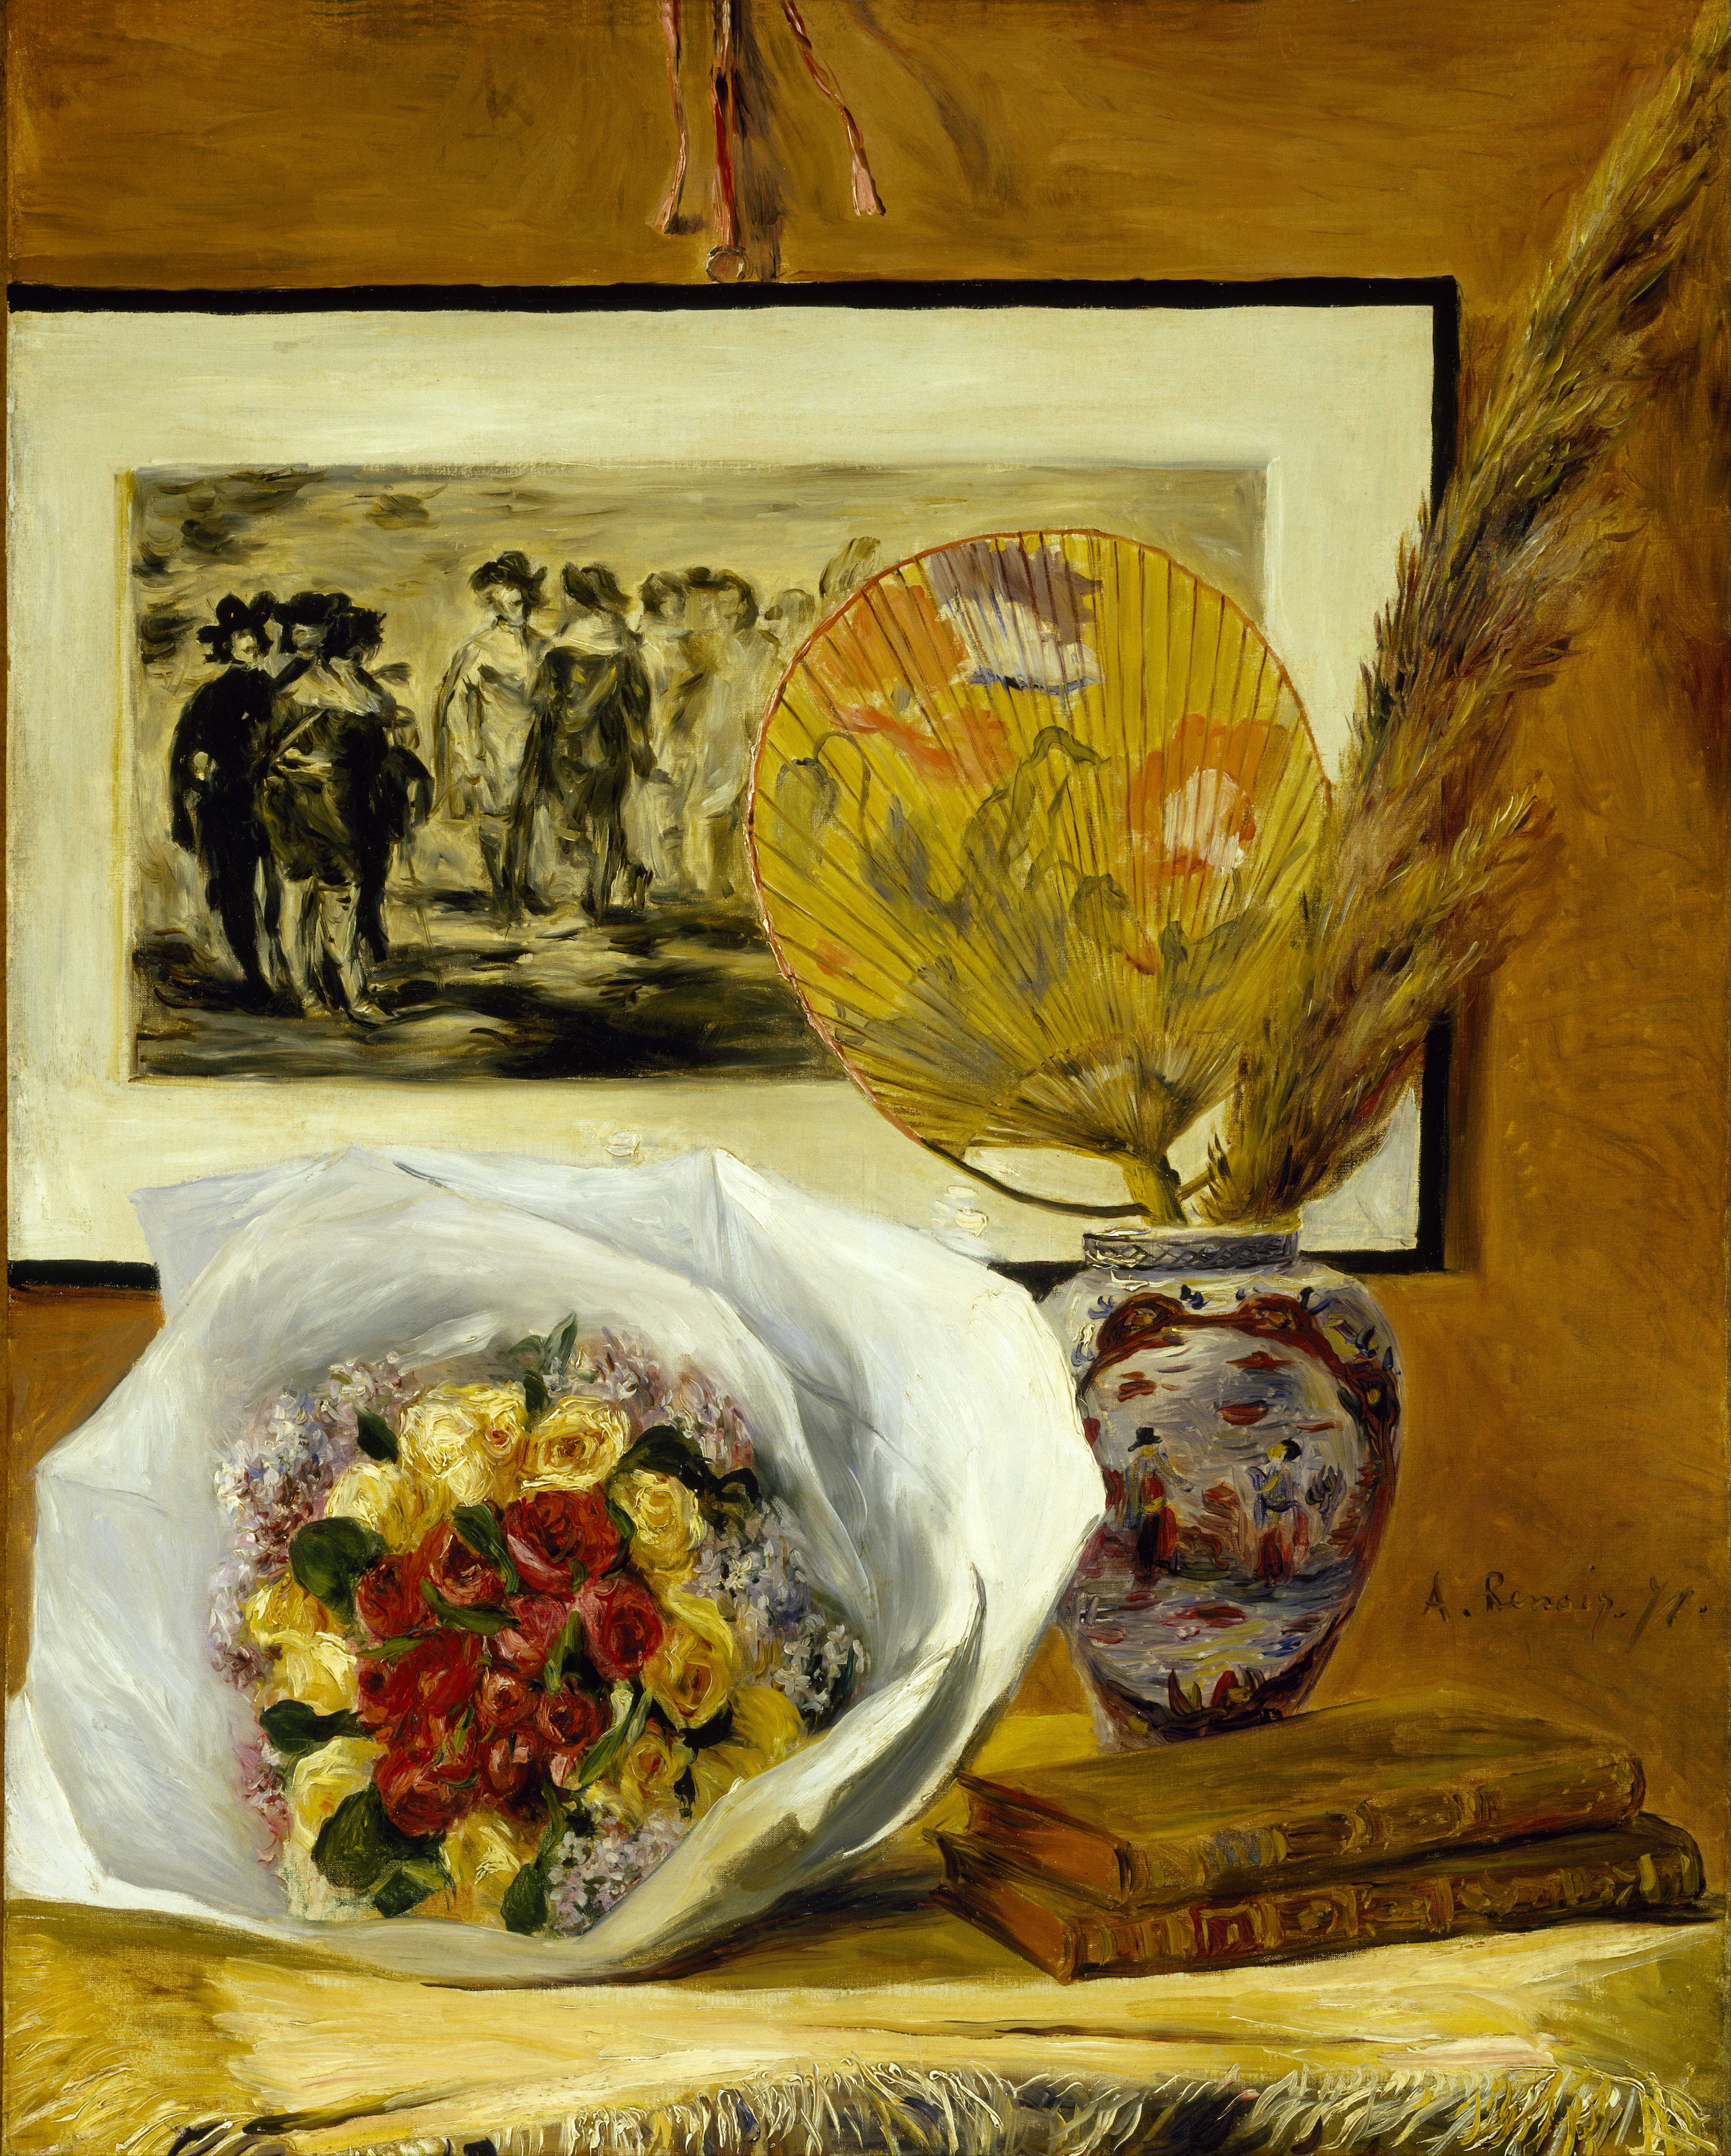 靜物與花束 by Pierre-Auguste Renoir - 1871 - 59.8 x 73.7 cm 